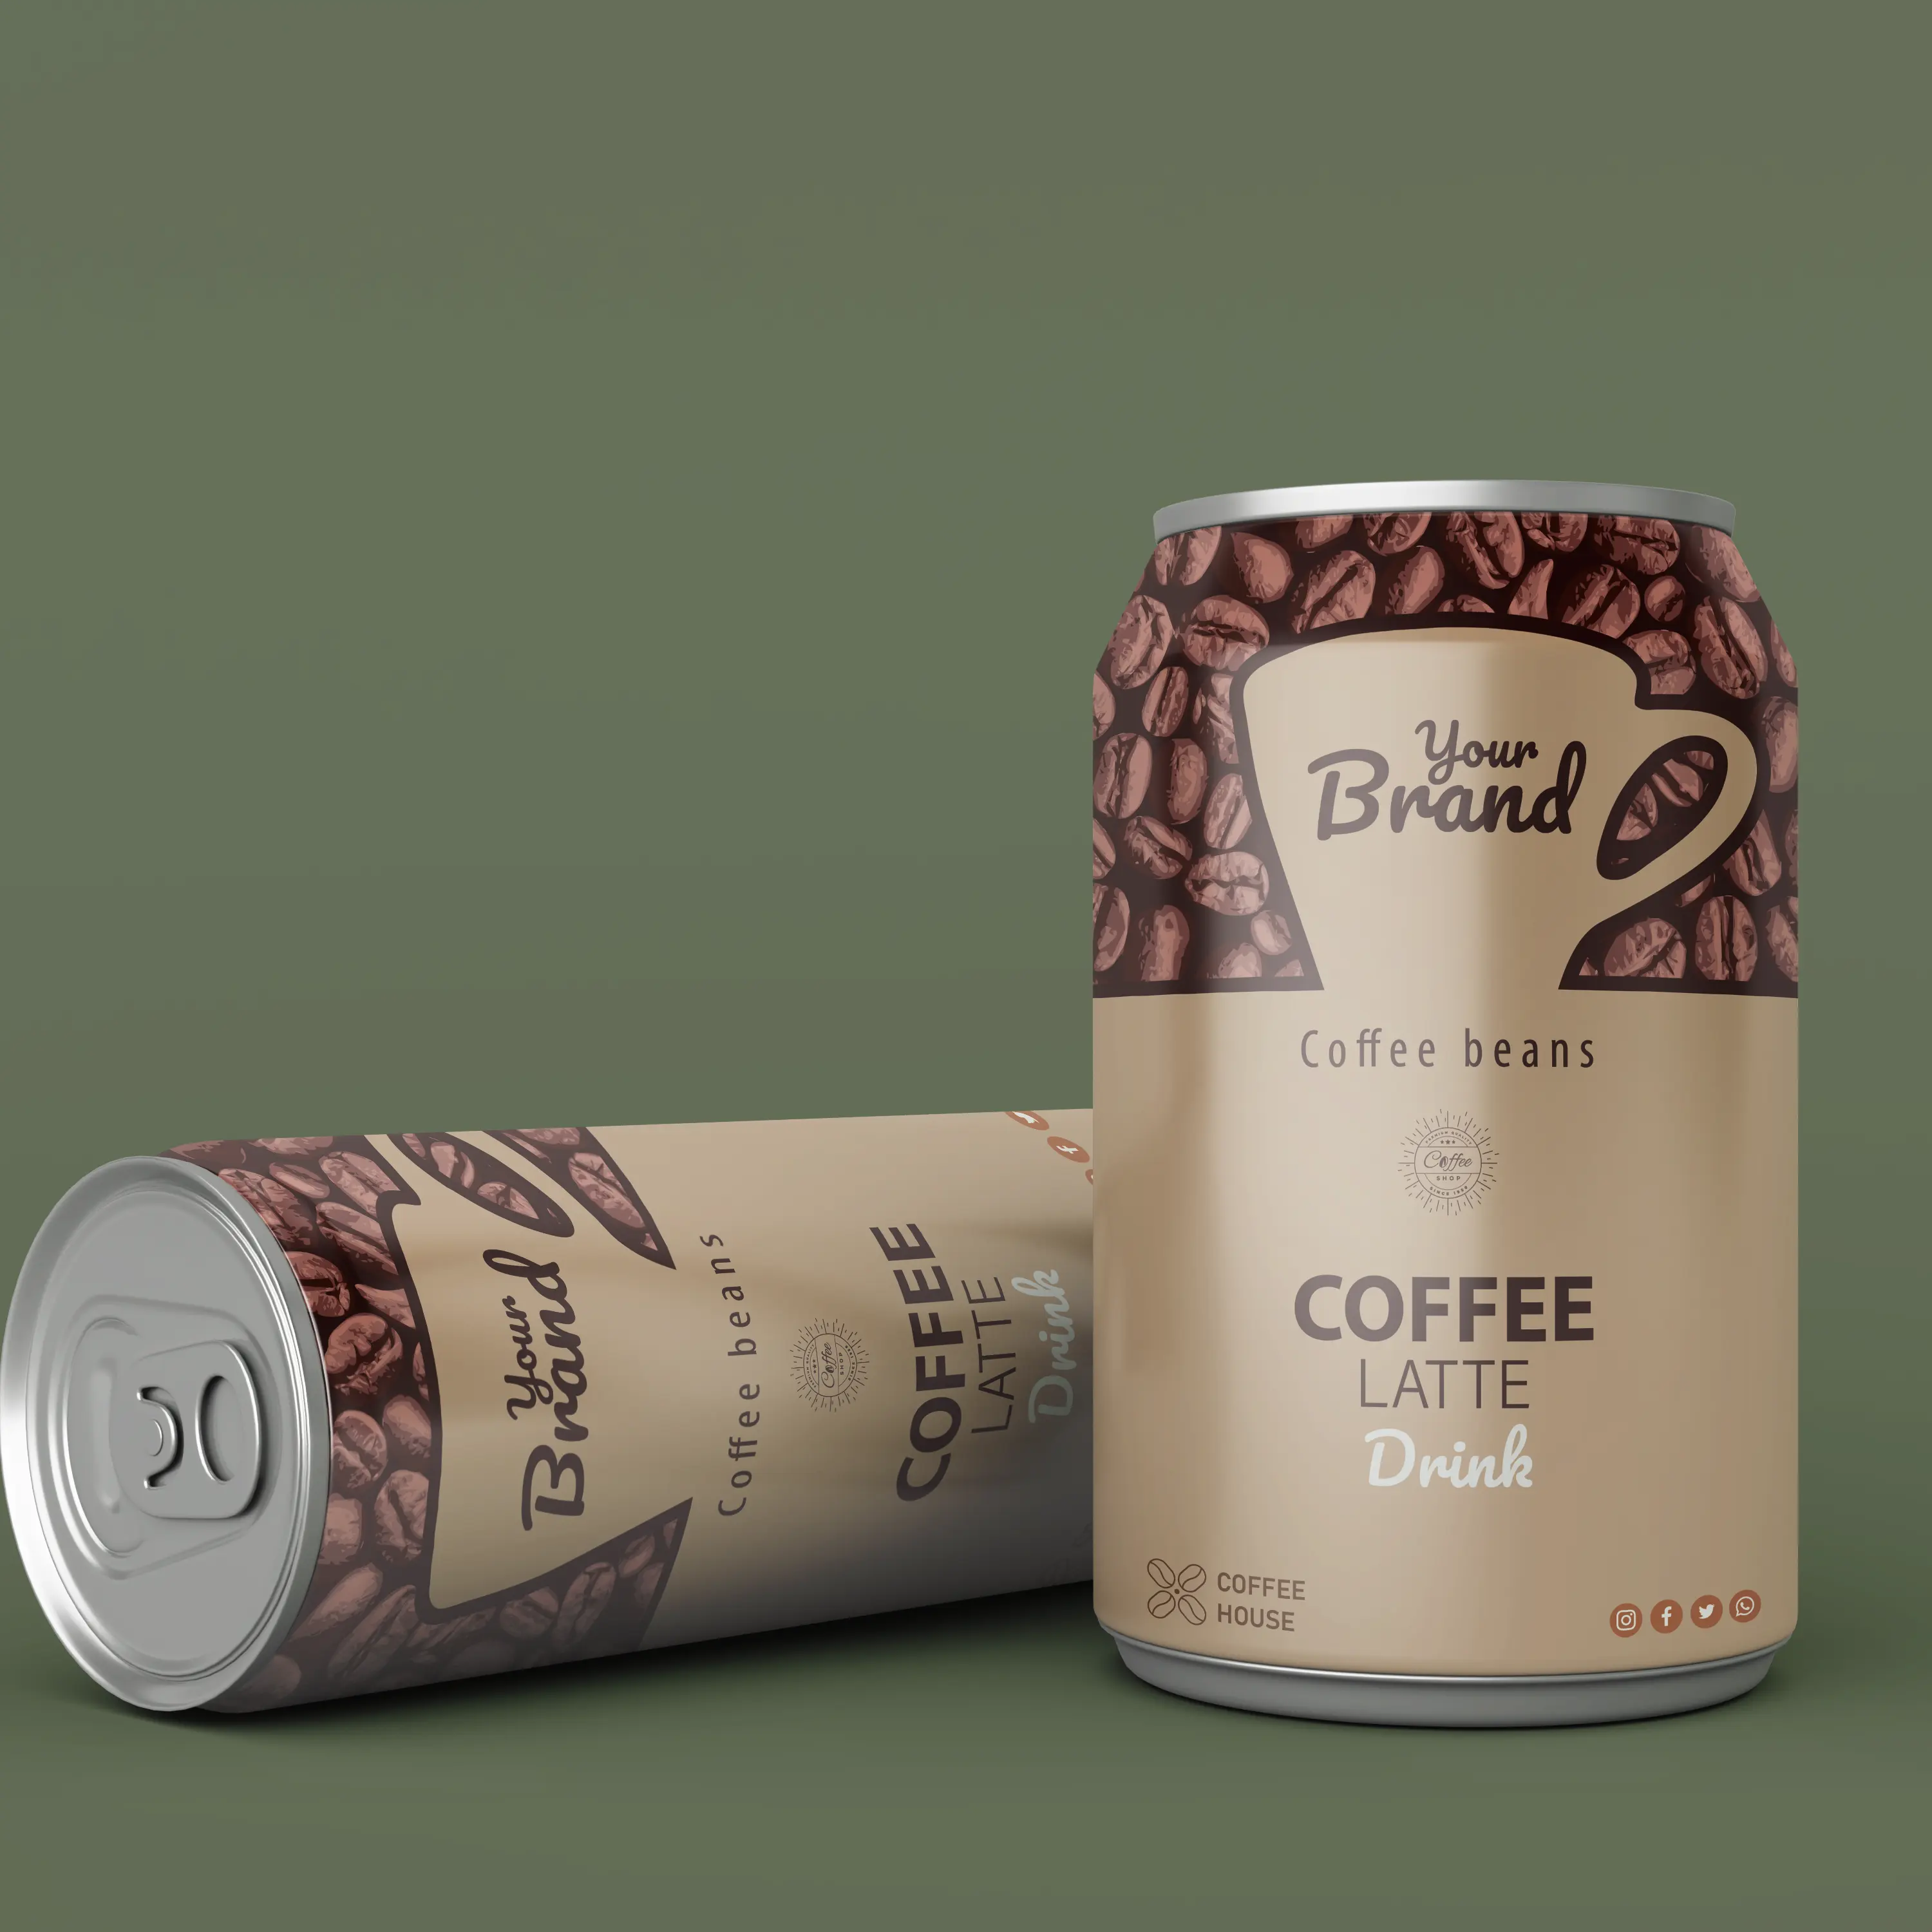 ماكينة صناعة بعلامة تجارية خاصة يمكن تناول القهوة من الألومينيوم بنسبة 330 من فيتنام على استعداد للشرب من المُصنع